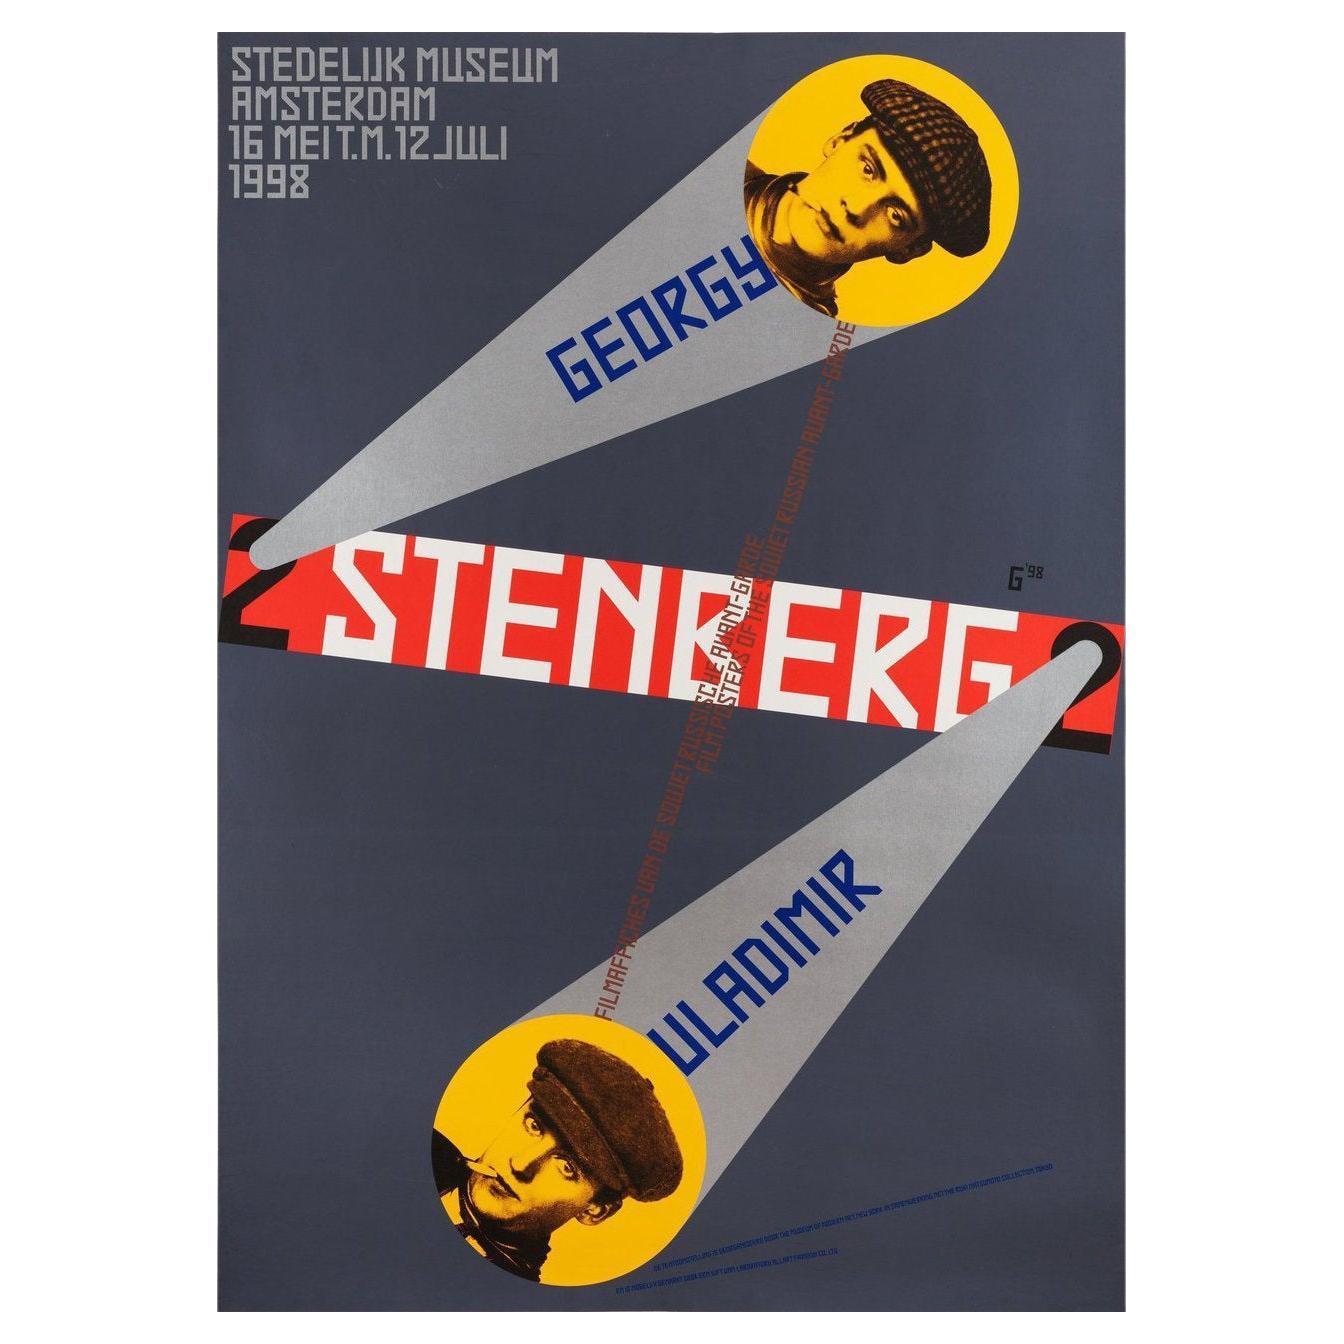 Filmaffiches Van Gregory En Vladamir Stenberg 1998 Swiss Film Poster For Sale